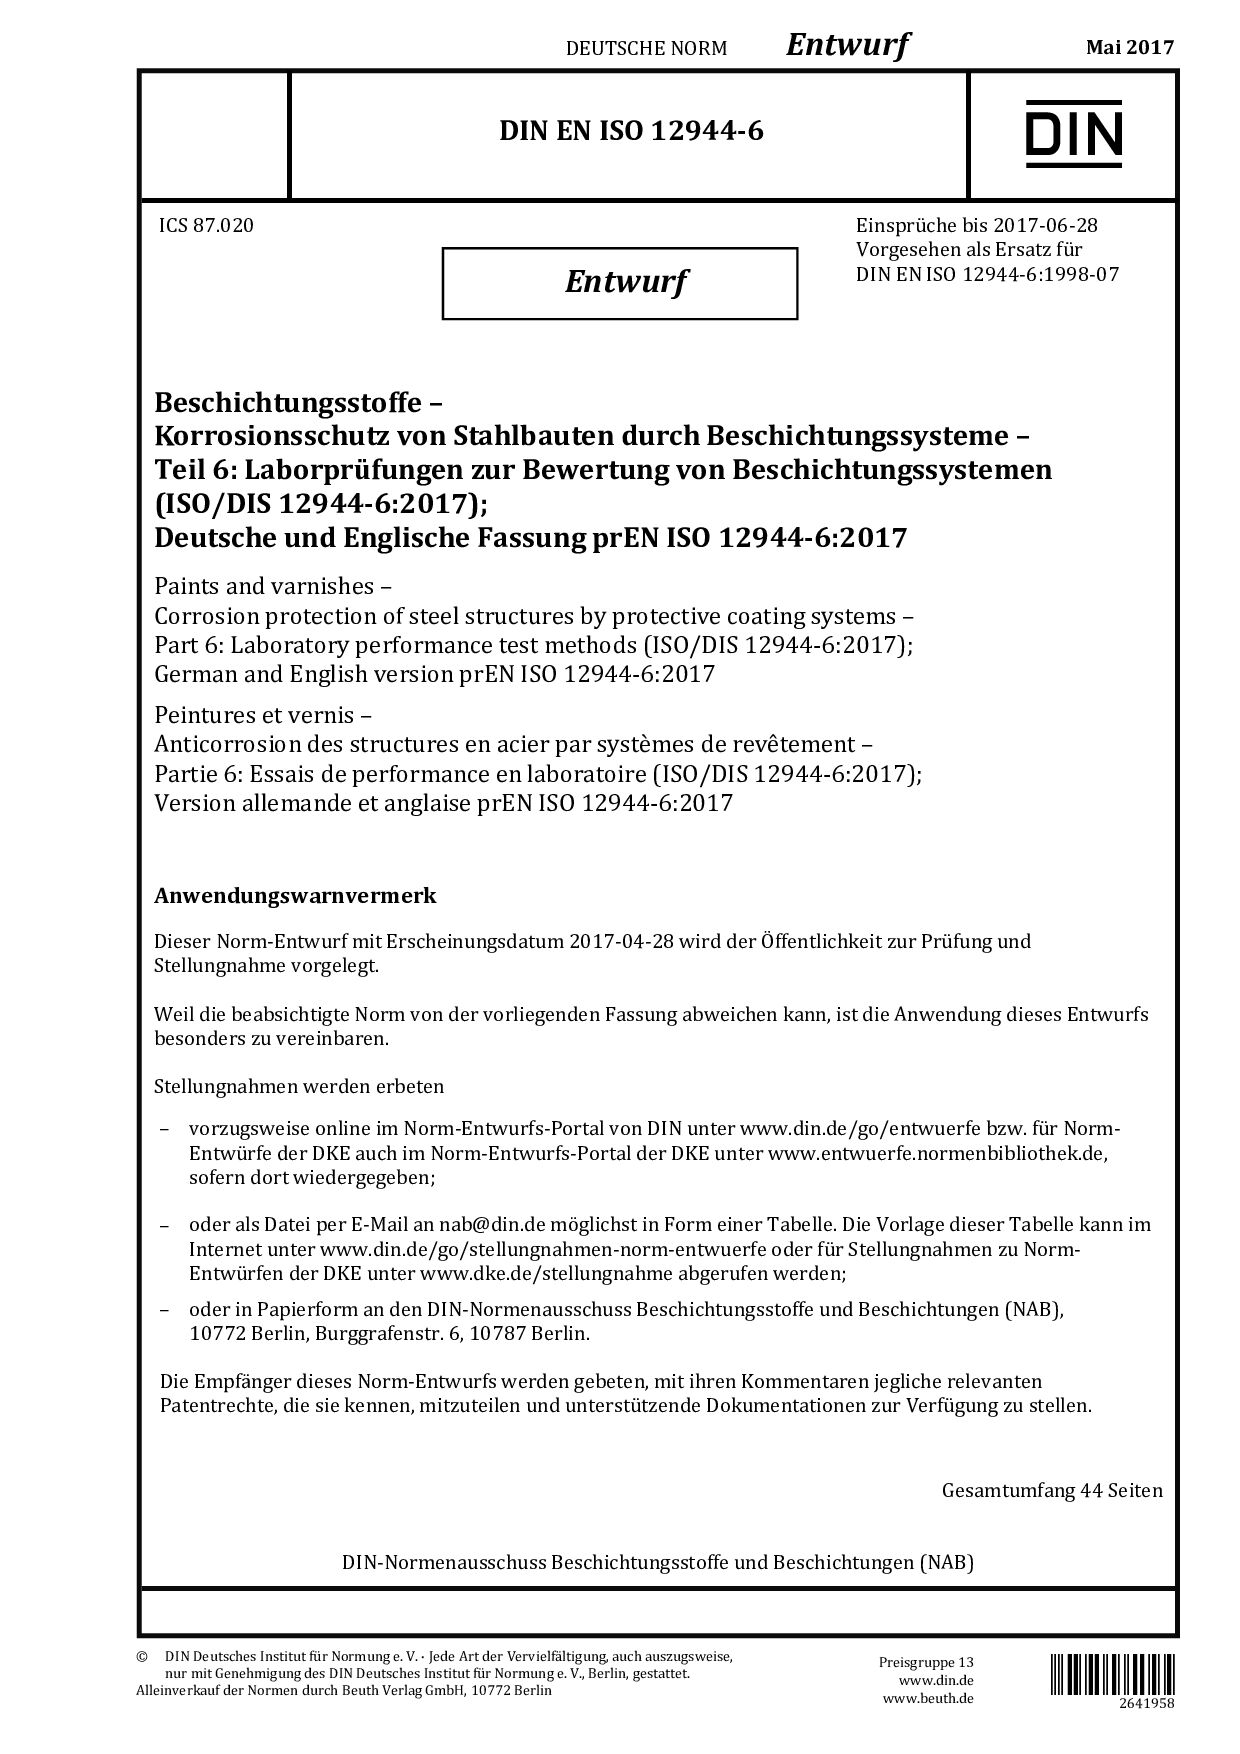 DIN EN ISO 12944-6 E:2017-05封面图